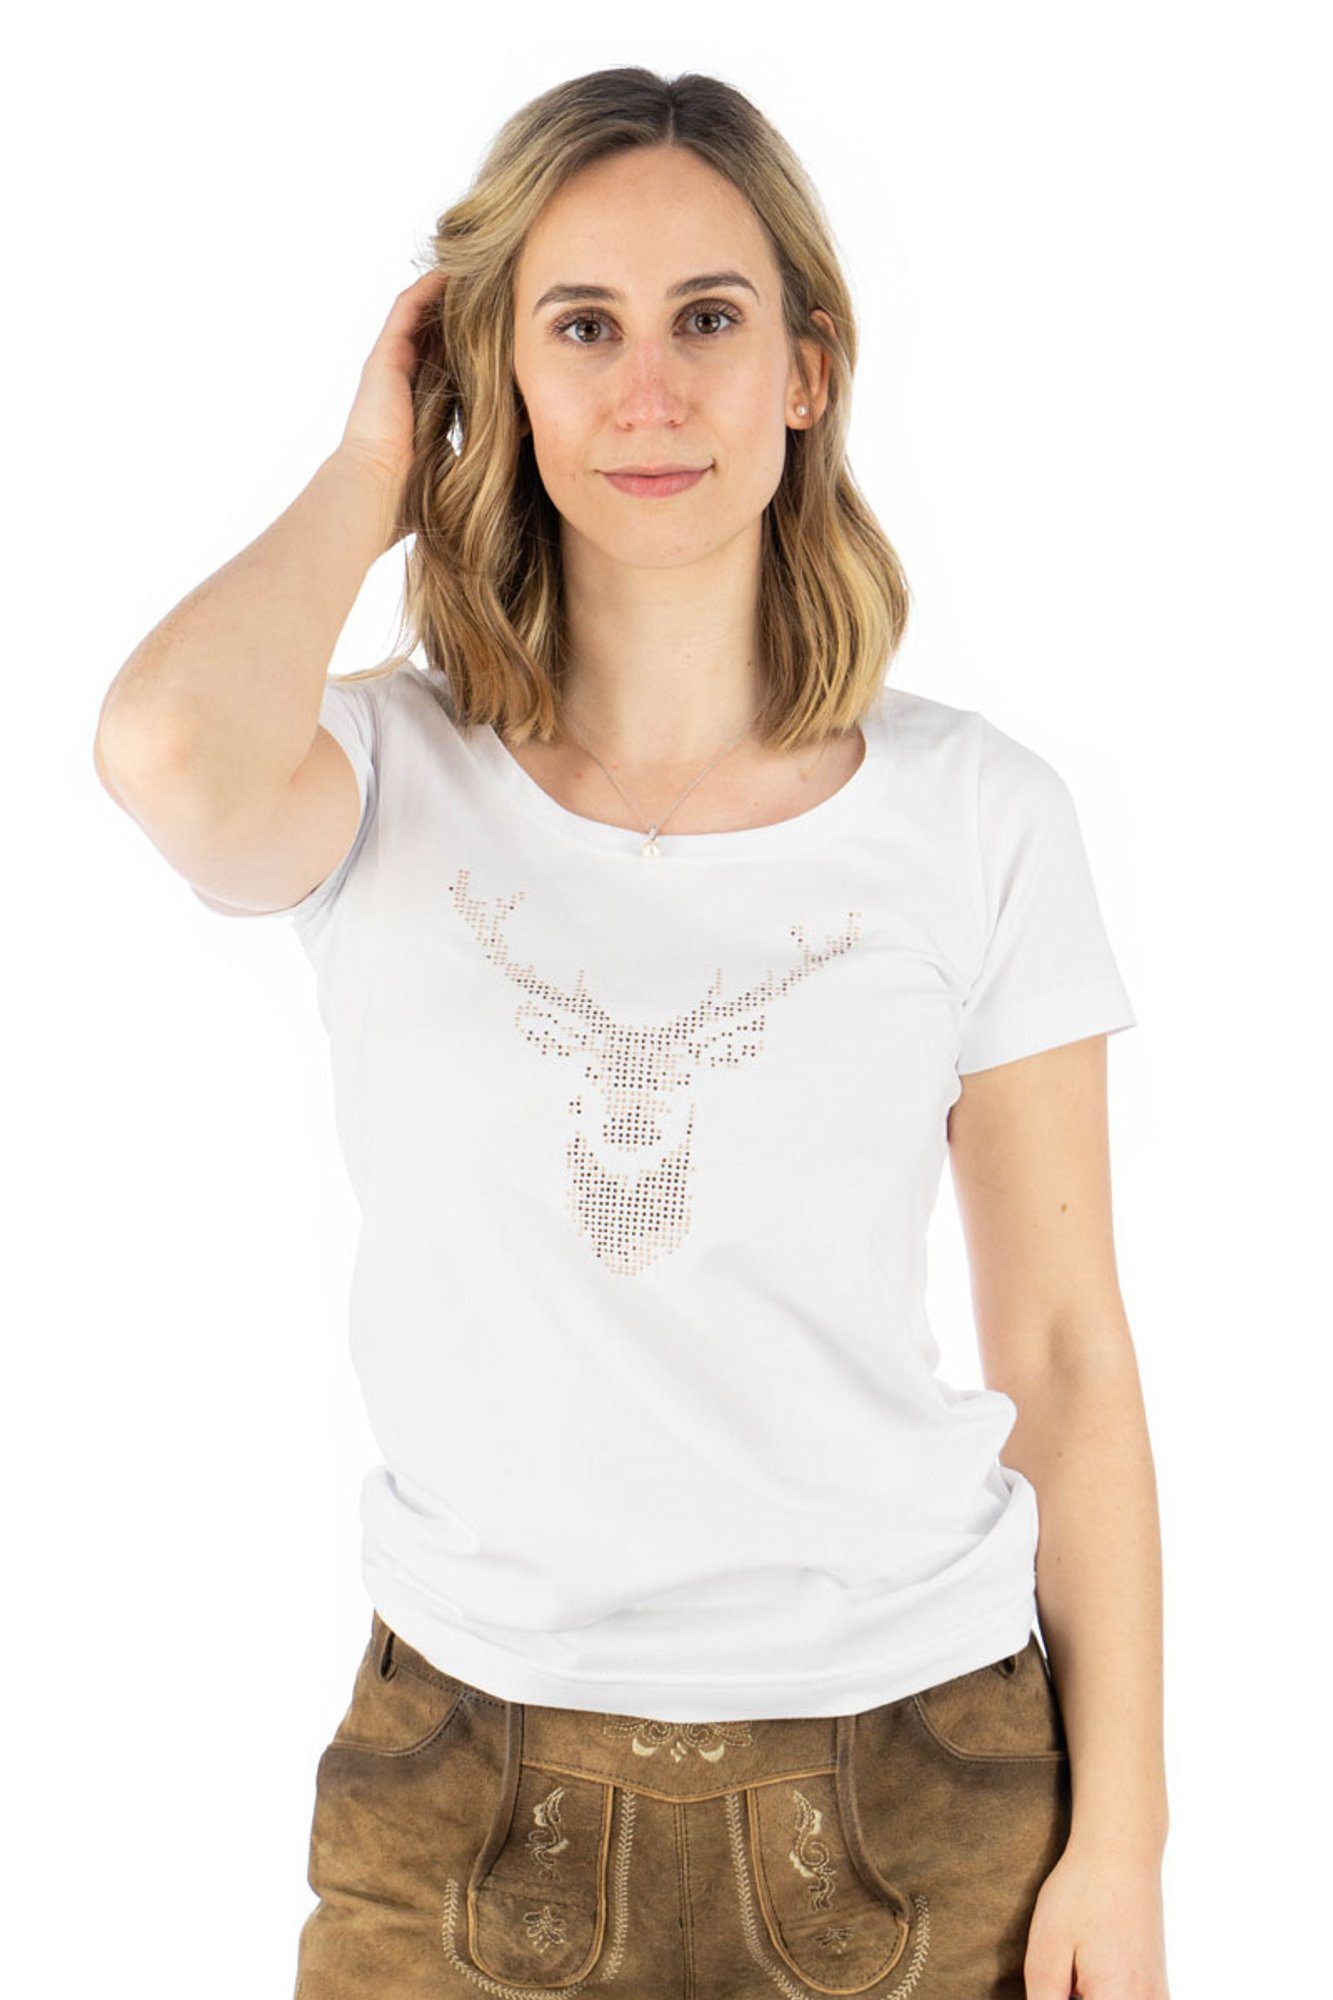 OS-Trachten Trachtenshirt weiß auf Uginoy Strass-Hirsch mit T-Shirt Brust der Kurzarm